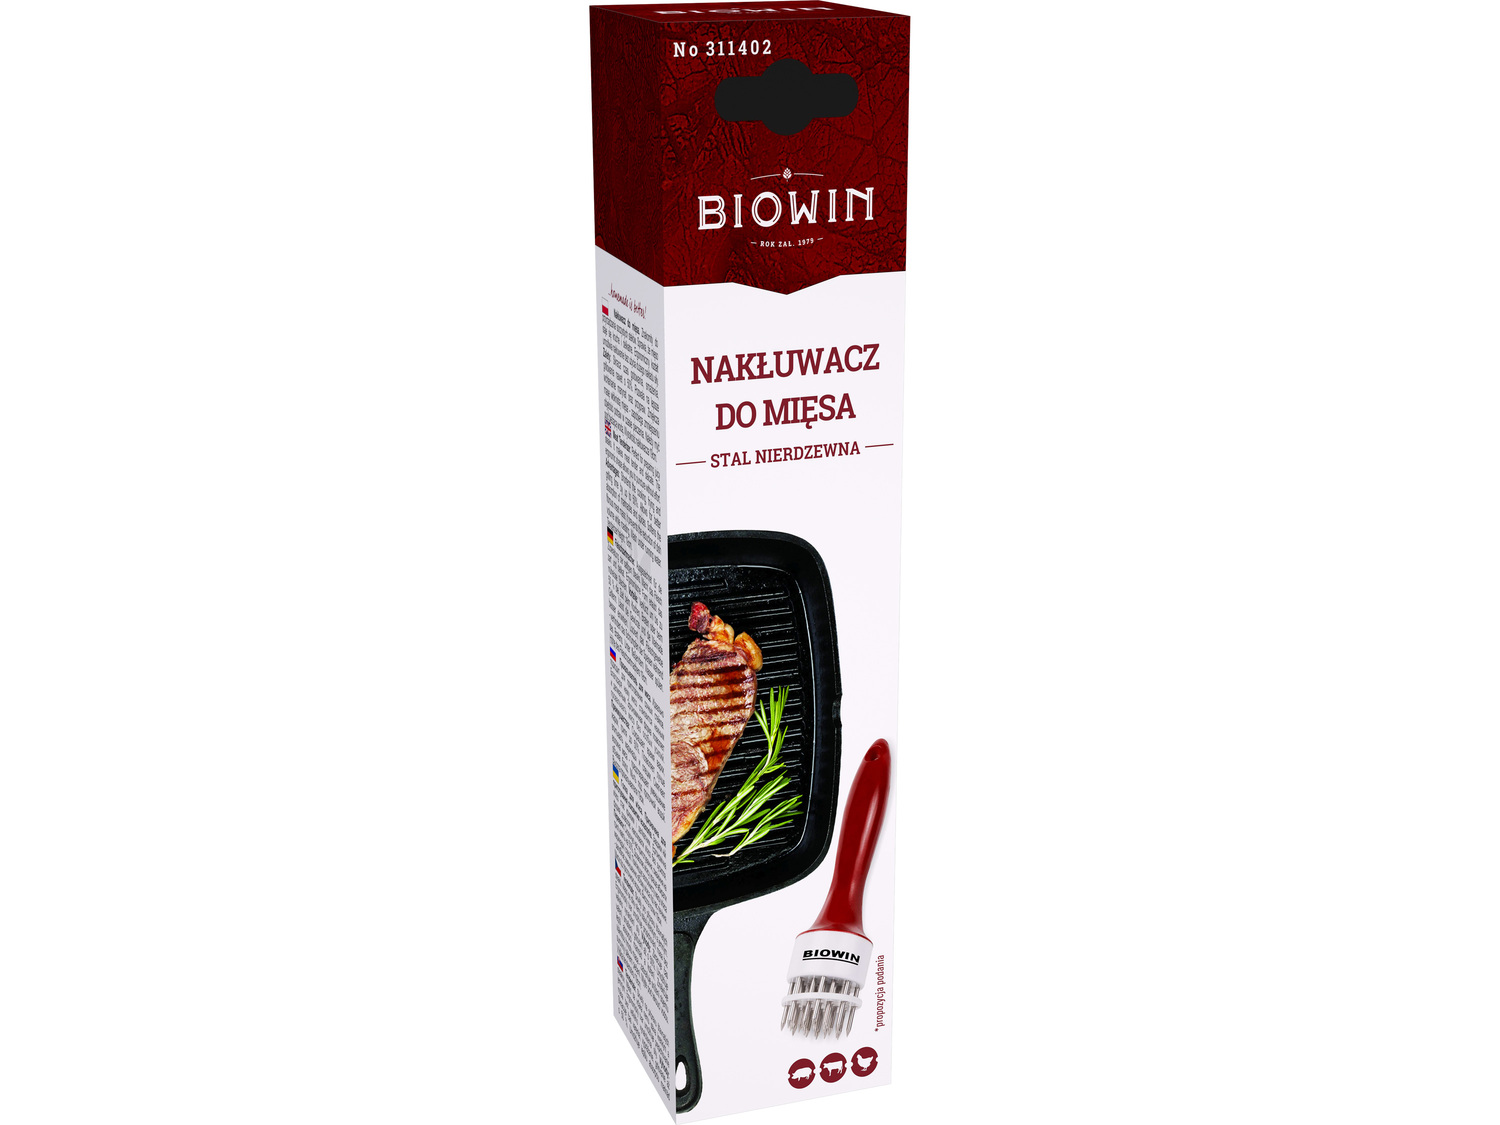 Nakłuwacz do mięsa Biowin, cena 15,99 PLN 
- do przyrządzania soczystych, delikatnych ...